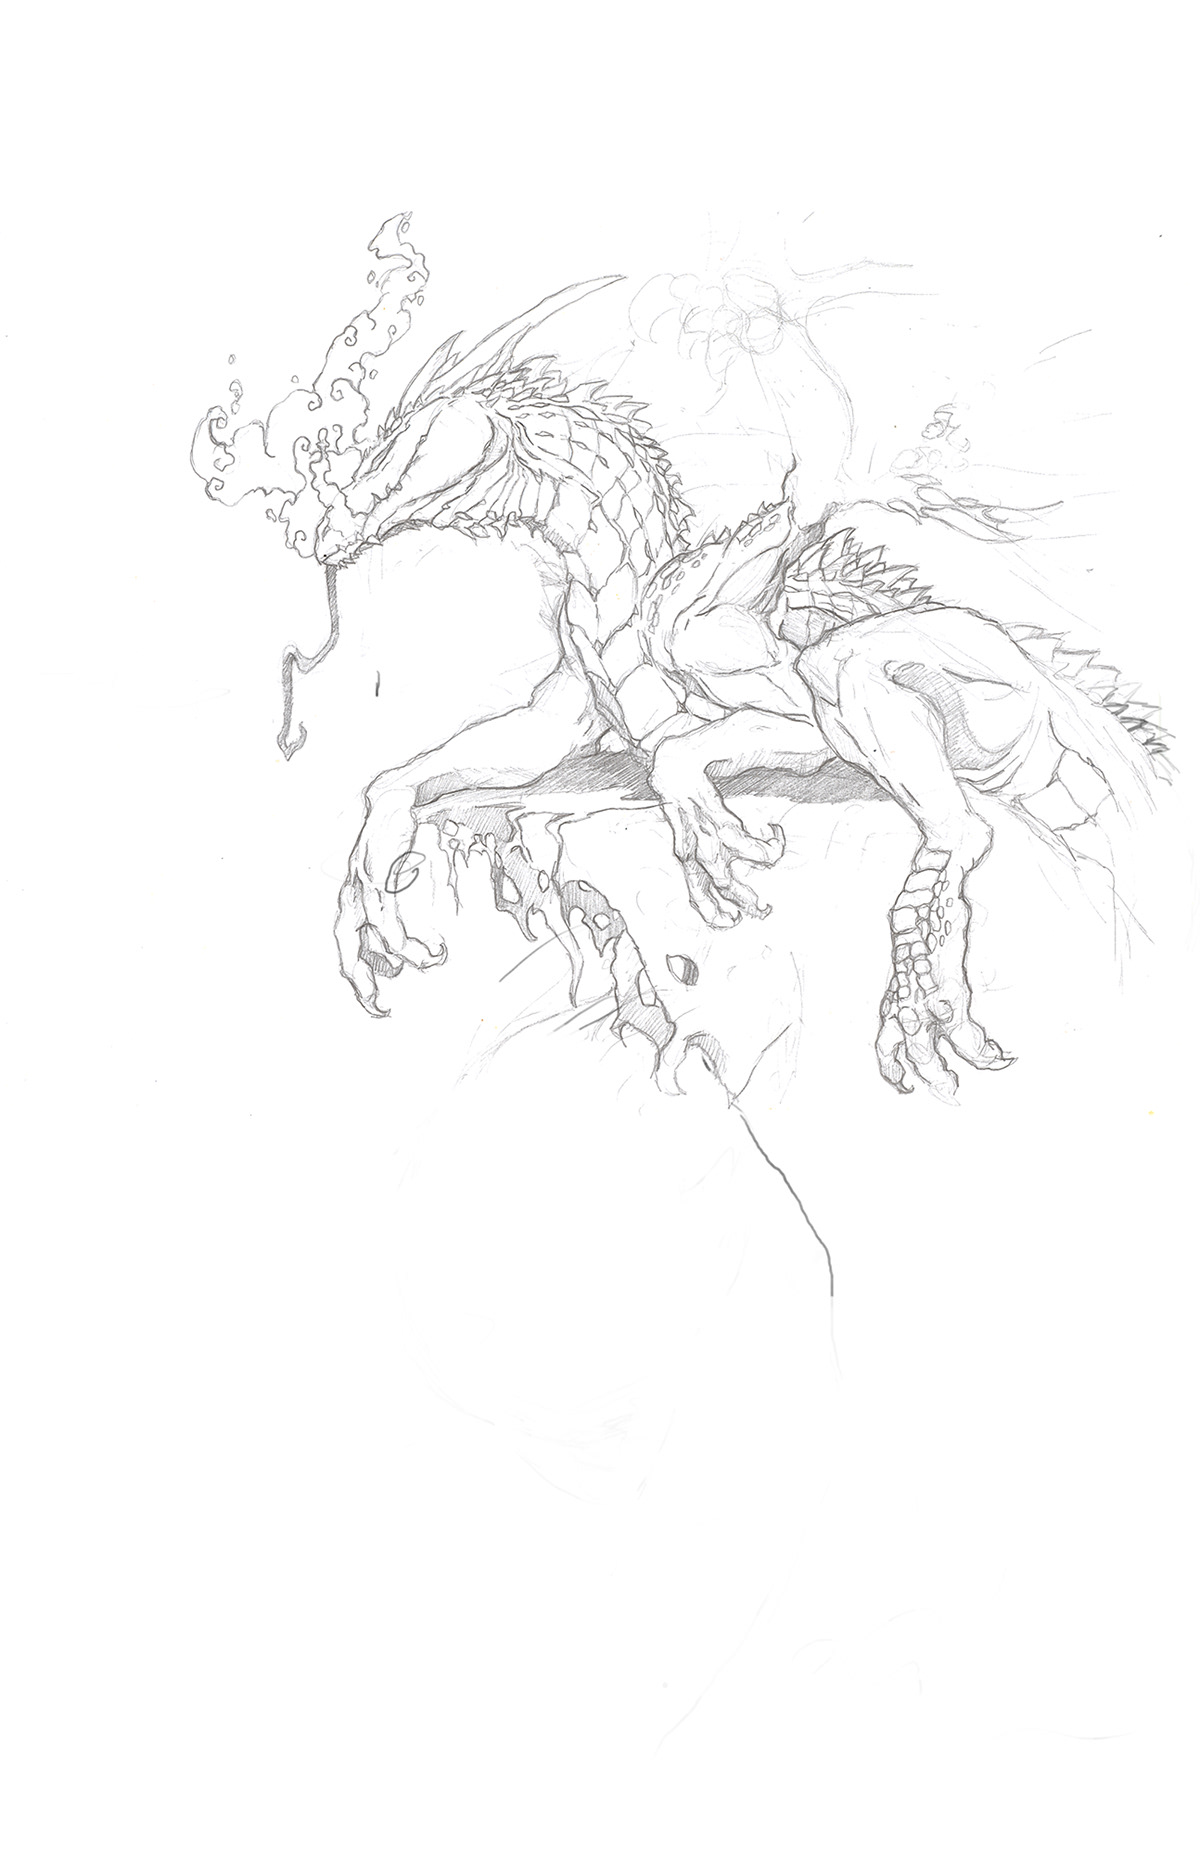 Superheros dragon fantasy Sci Fi sketch line pencil pen and ink imagination Fun